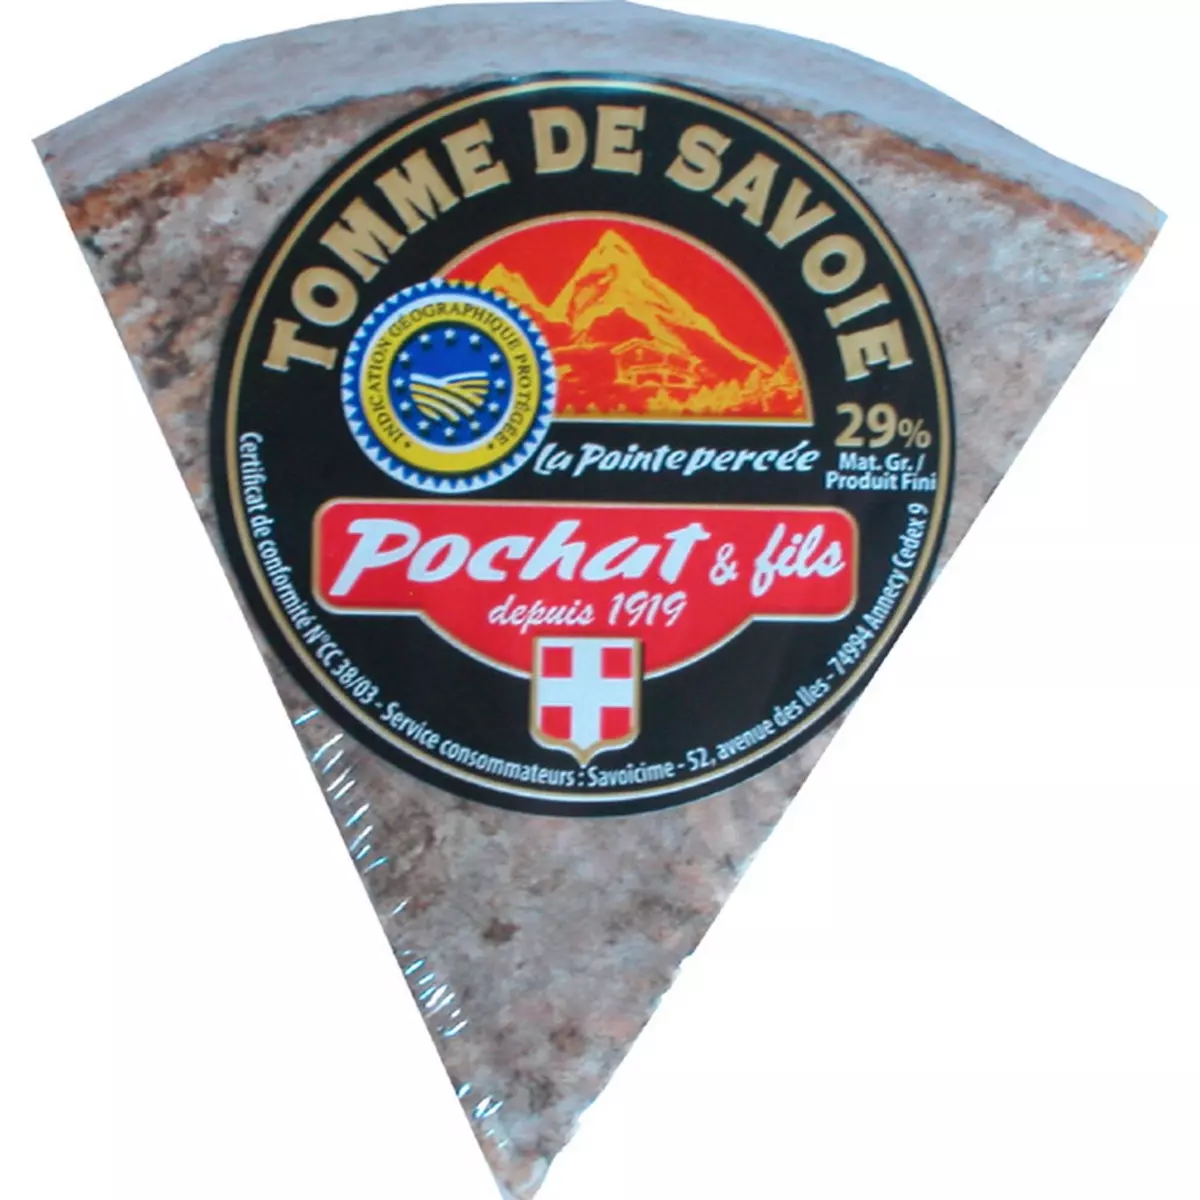 POCHAT & FILS Tomme de Savoie pâte percée AOP 250g